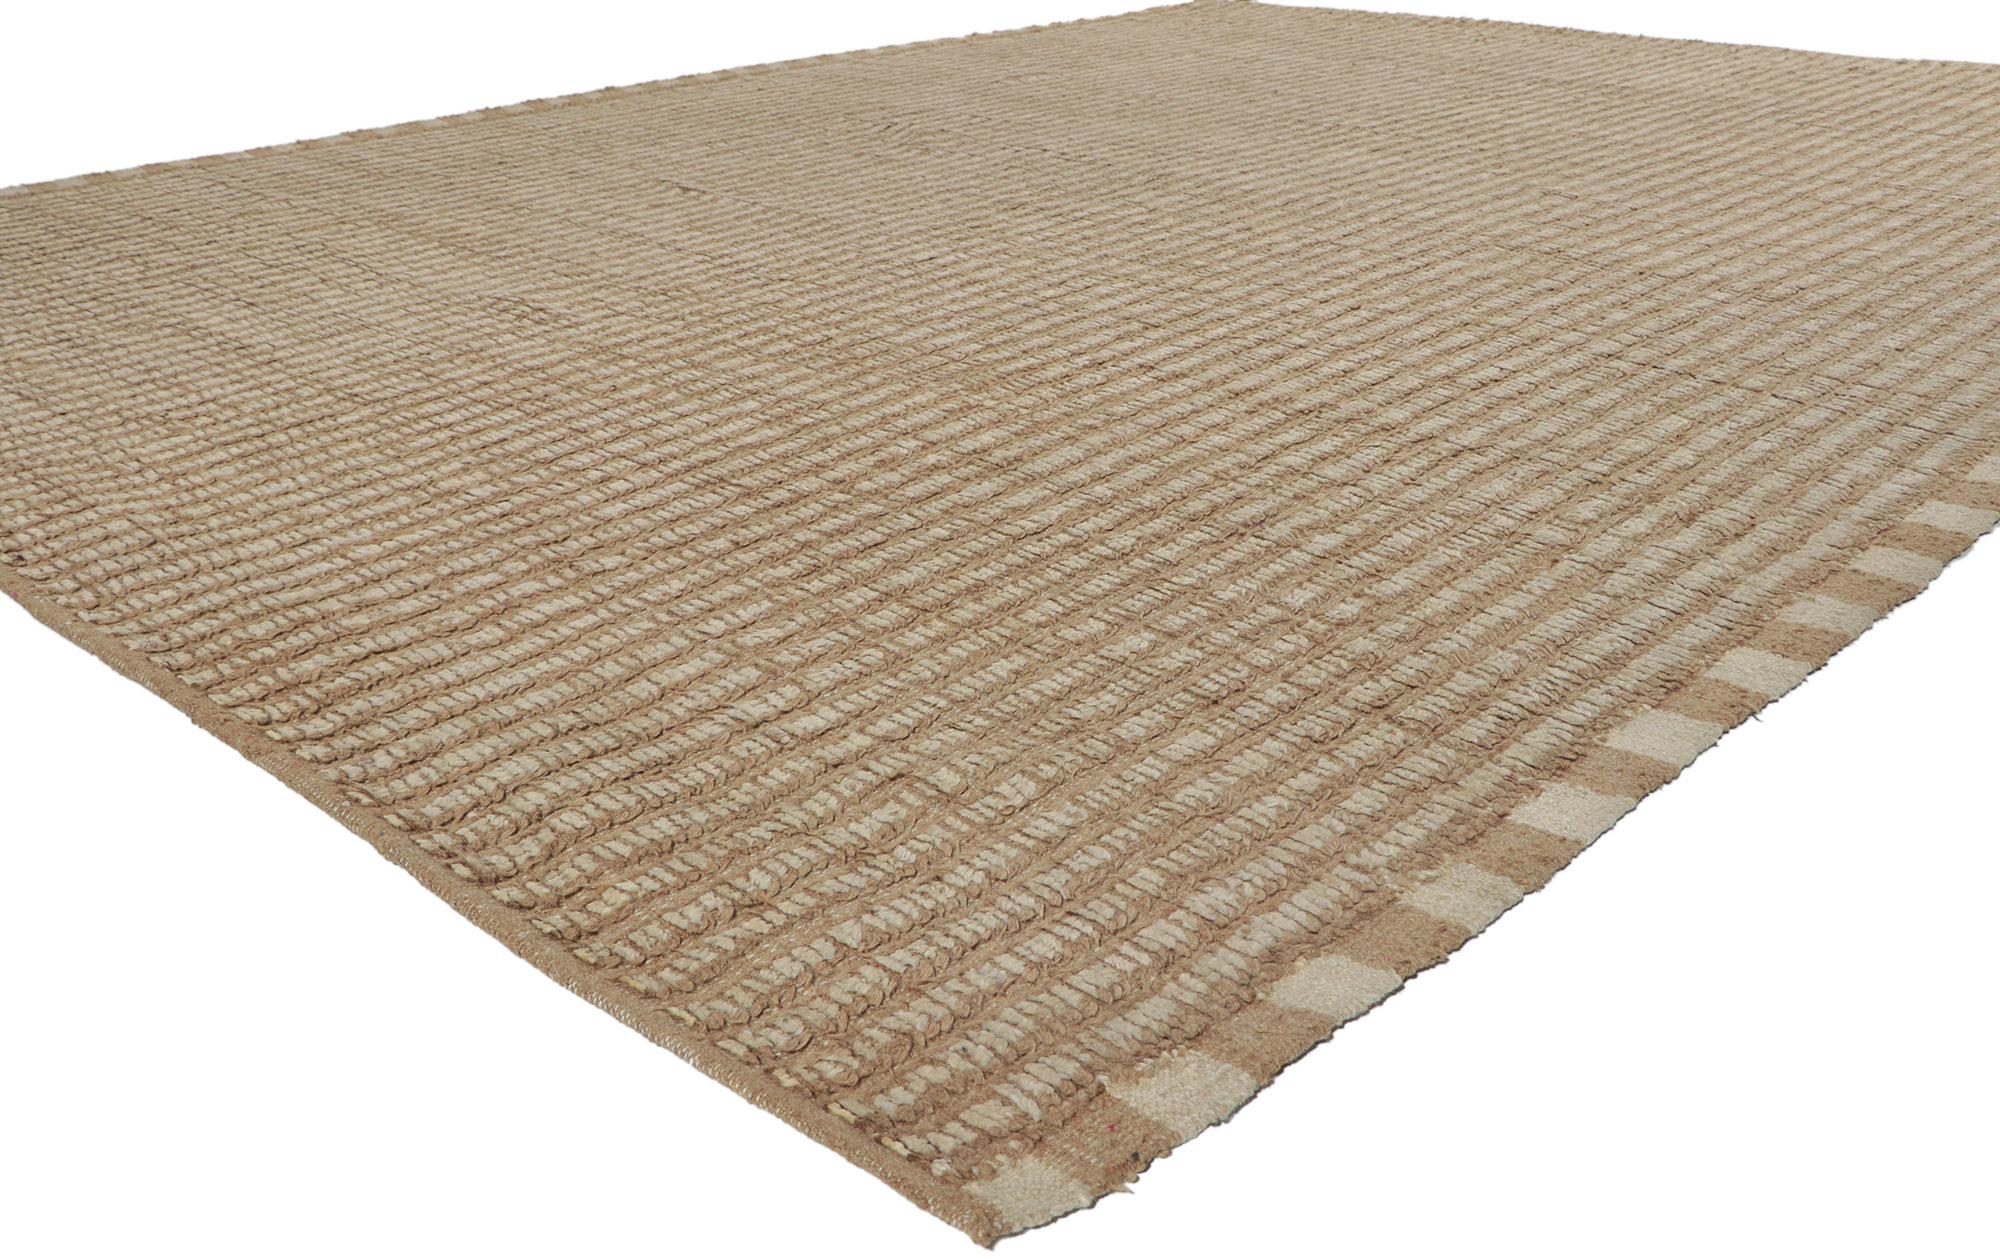 80805 New Contemporary Marokkanischer Stil Teppich mit kurzem Flor, 09'00 x 12'00. Dieser moderne marokkanische Teppich aus handgeknüpfter Wolle besticht durch seine Schlichtheit, seine unglaubliche Detailtreue und seine Textur - eine Vision